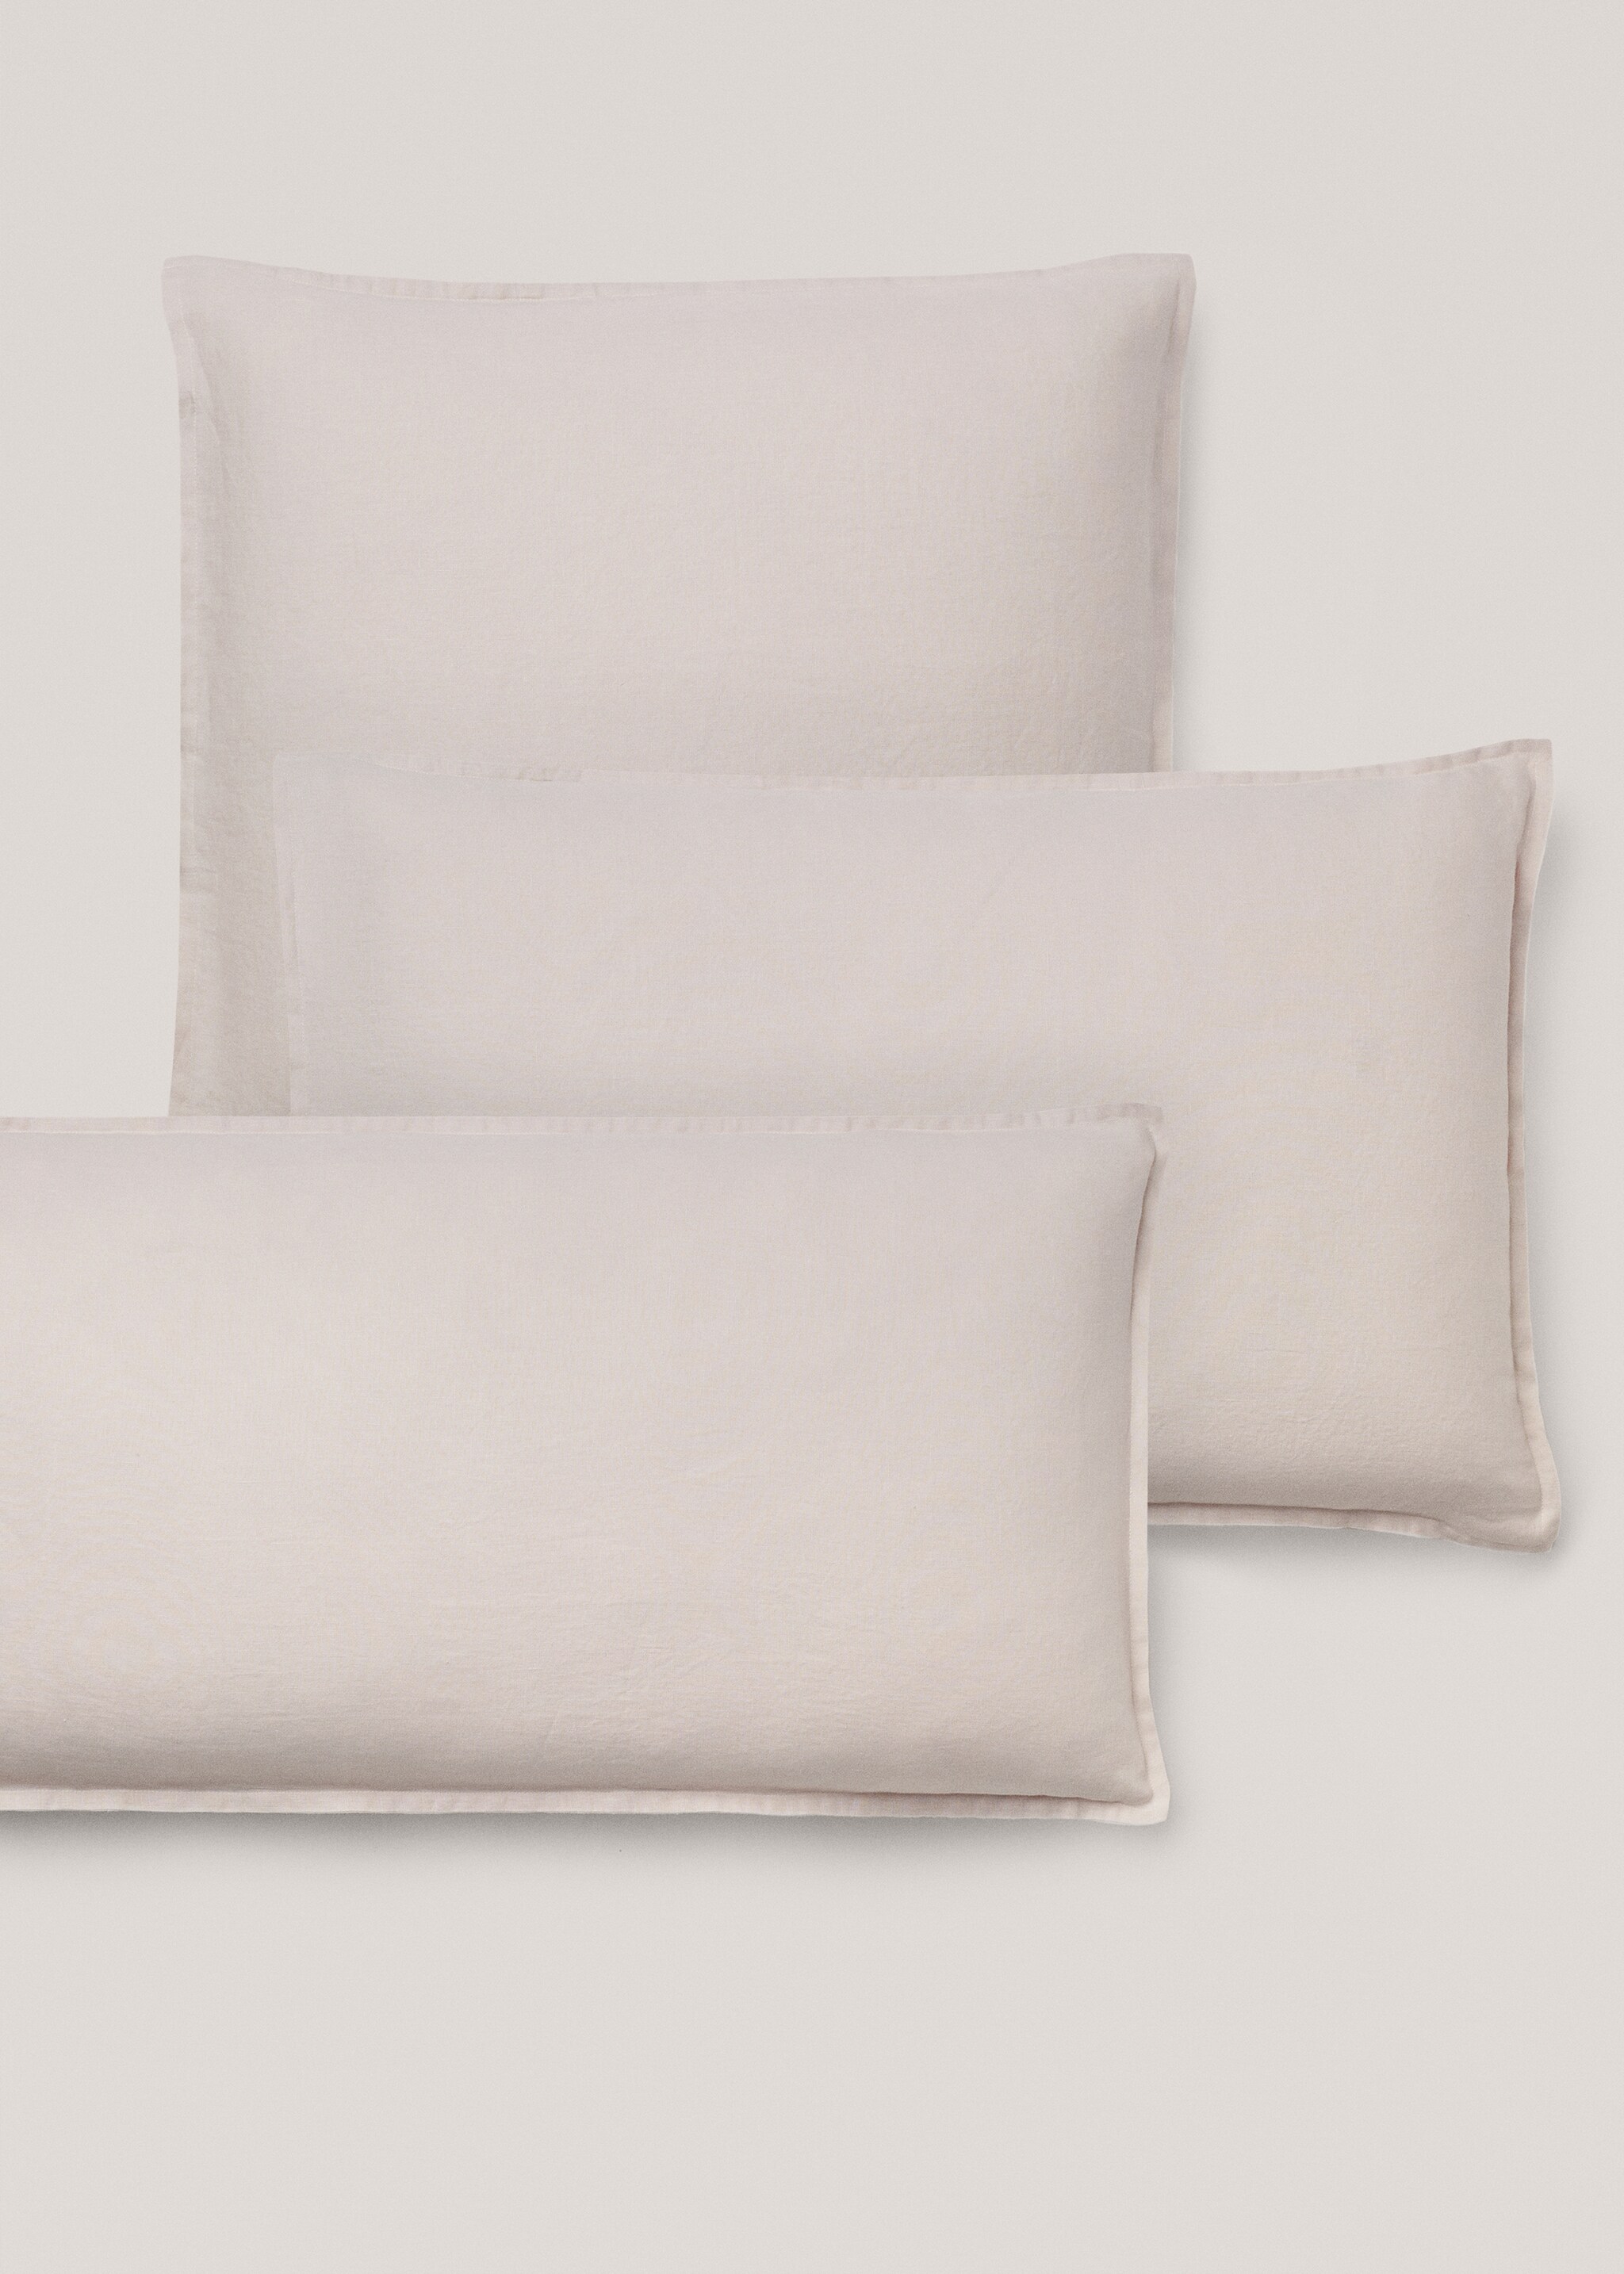 100% linen pillowcase 45x110cm - Details of the article 4